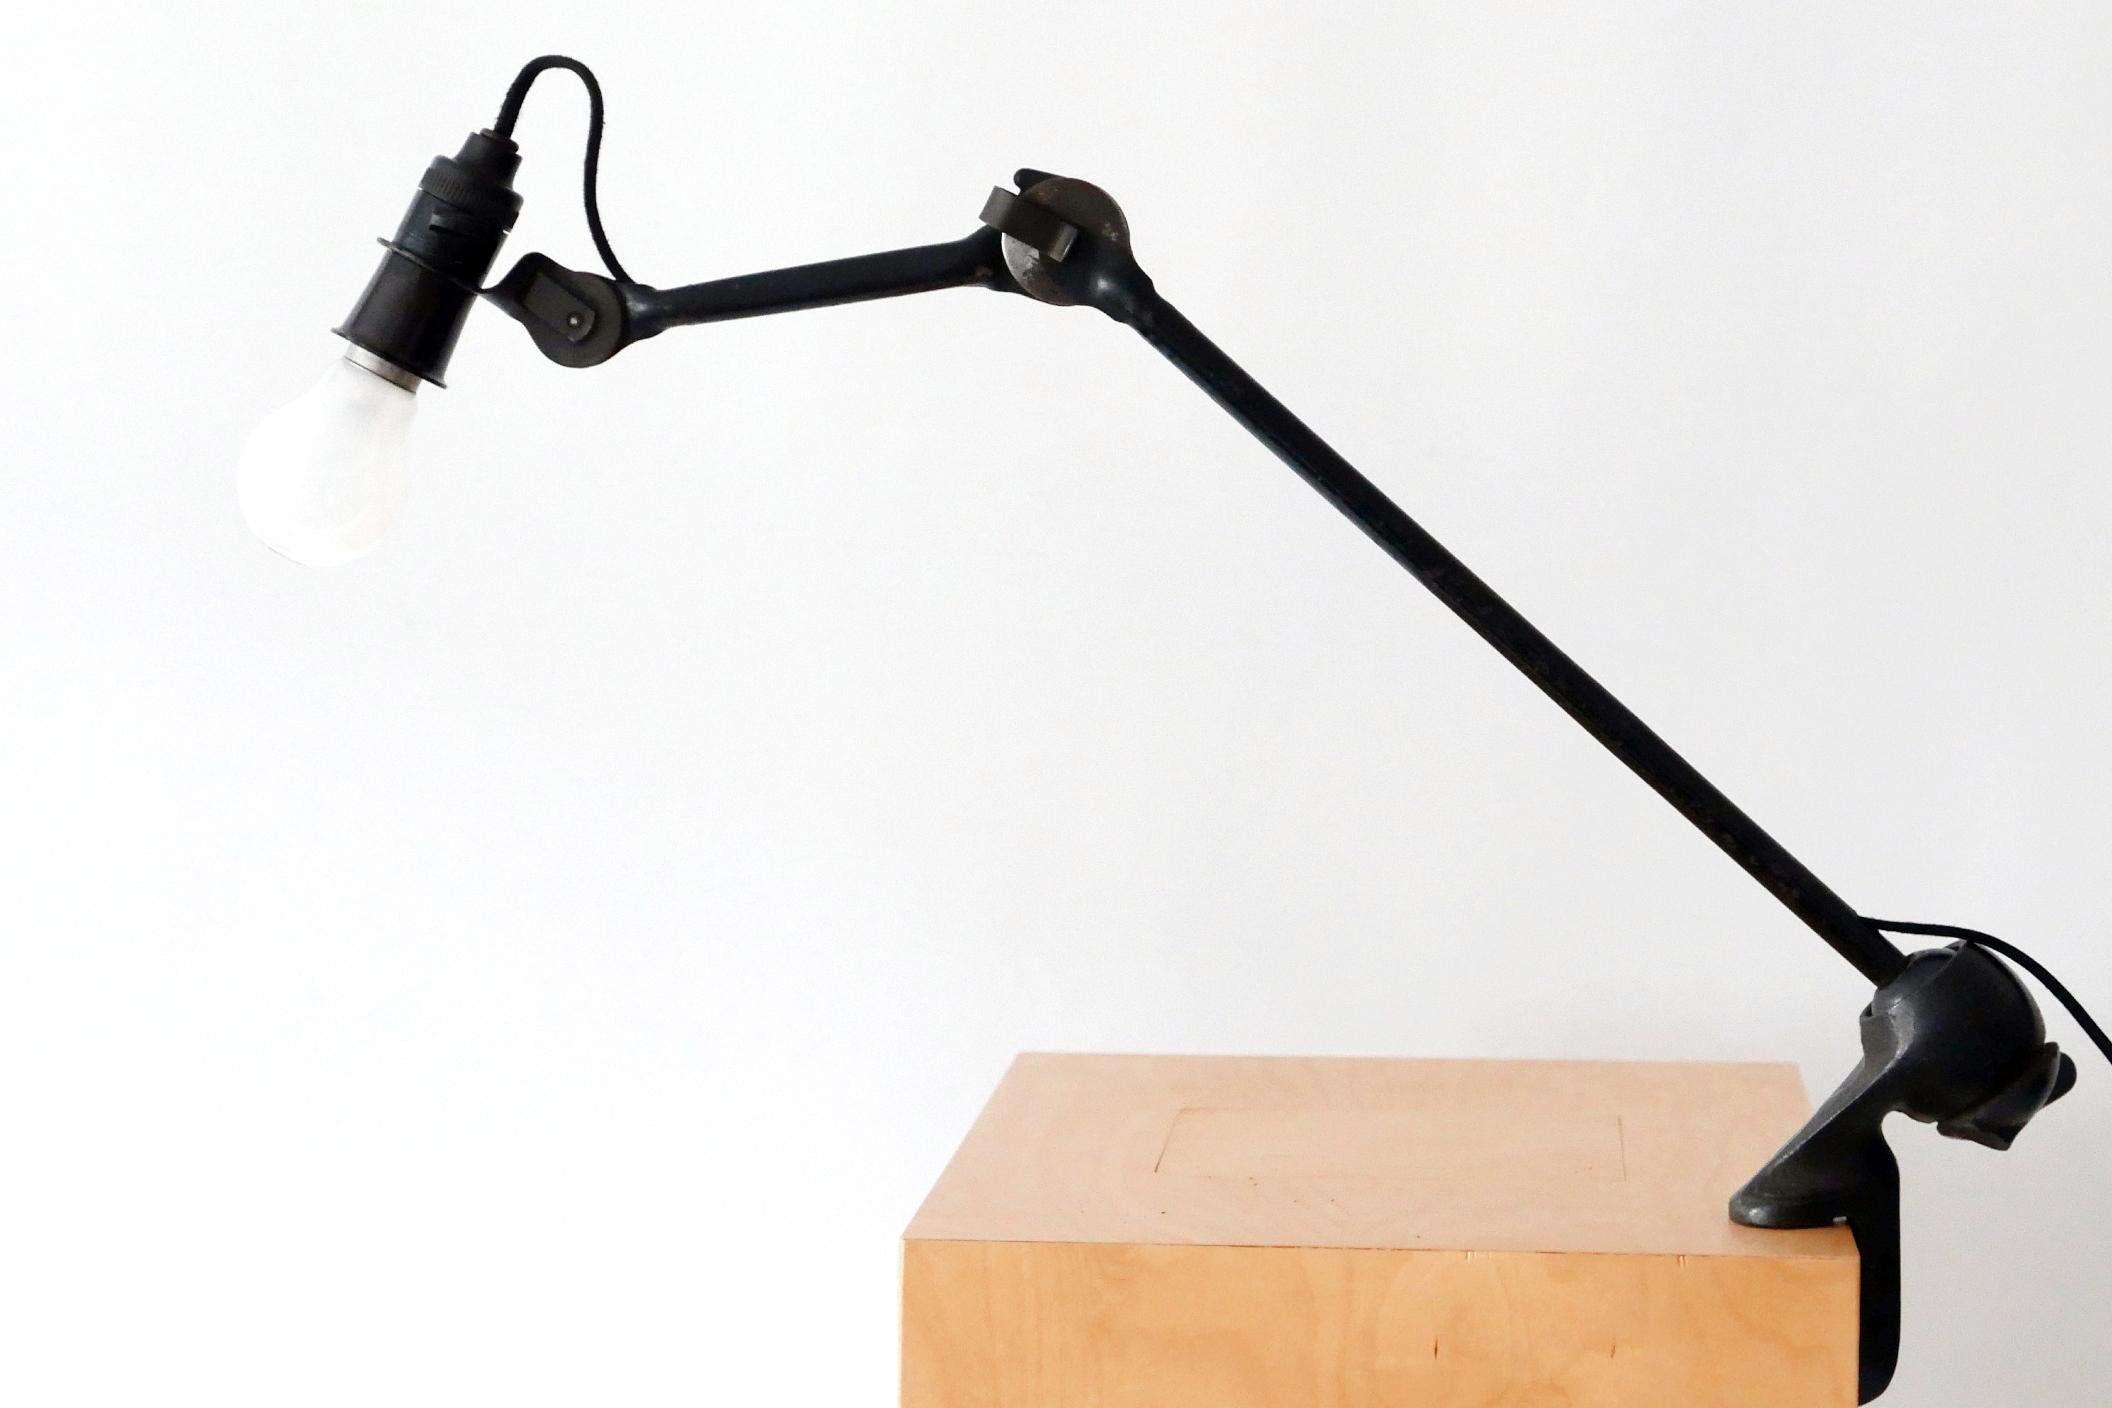 Modernist Task Light or Clamp Table Lamp by Bernard-Albin Gras for Gras, 1920s For Sale 3